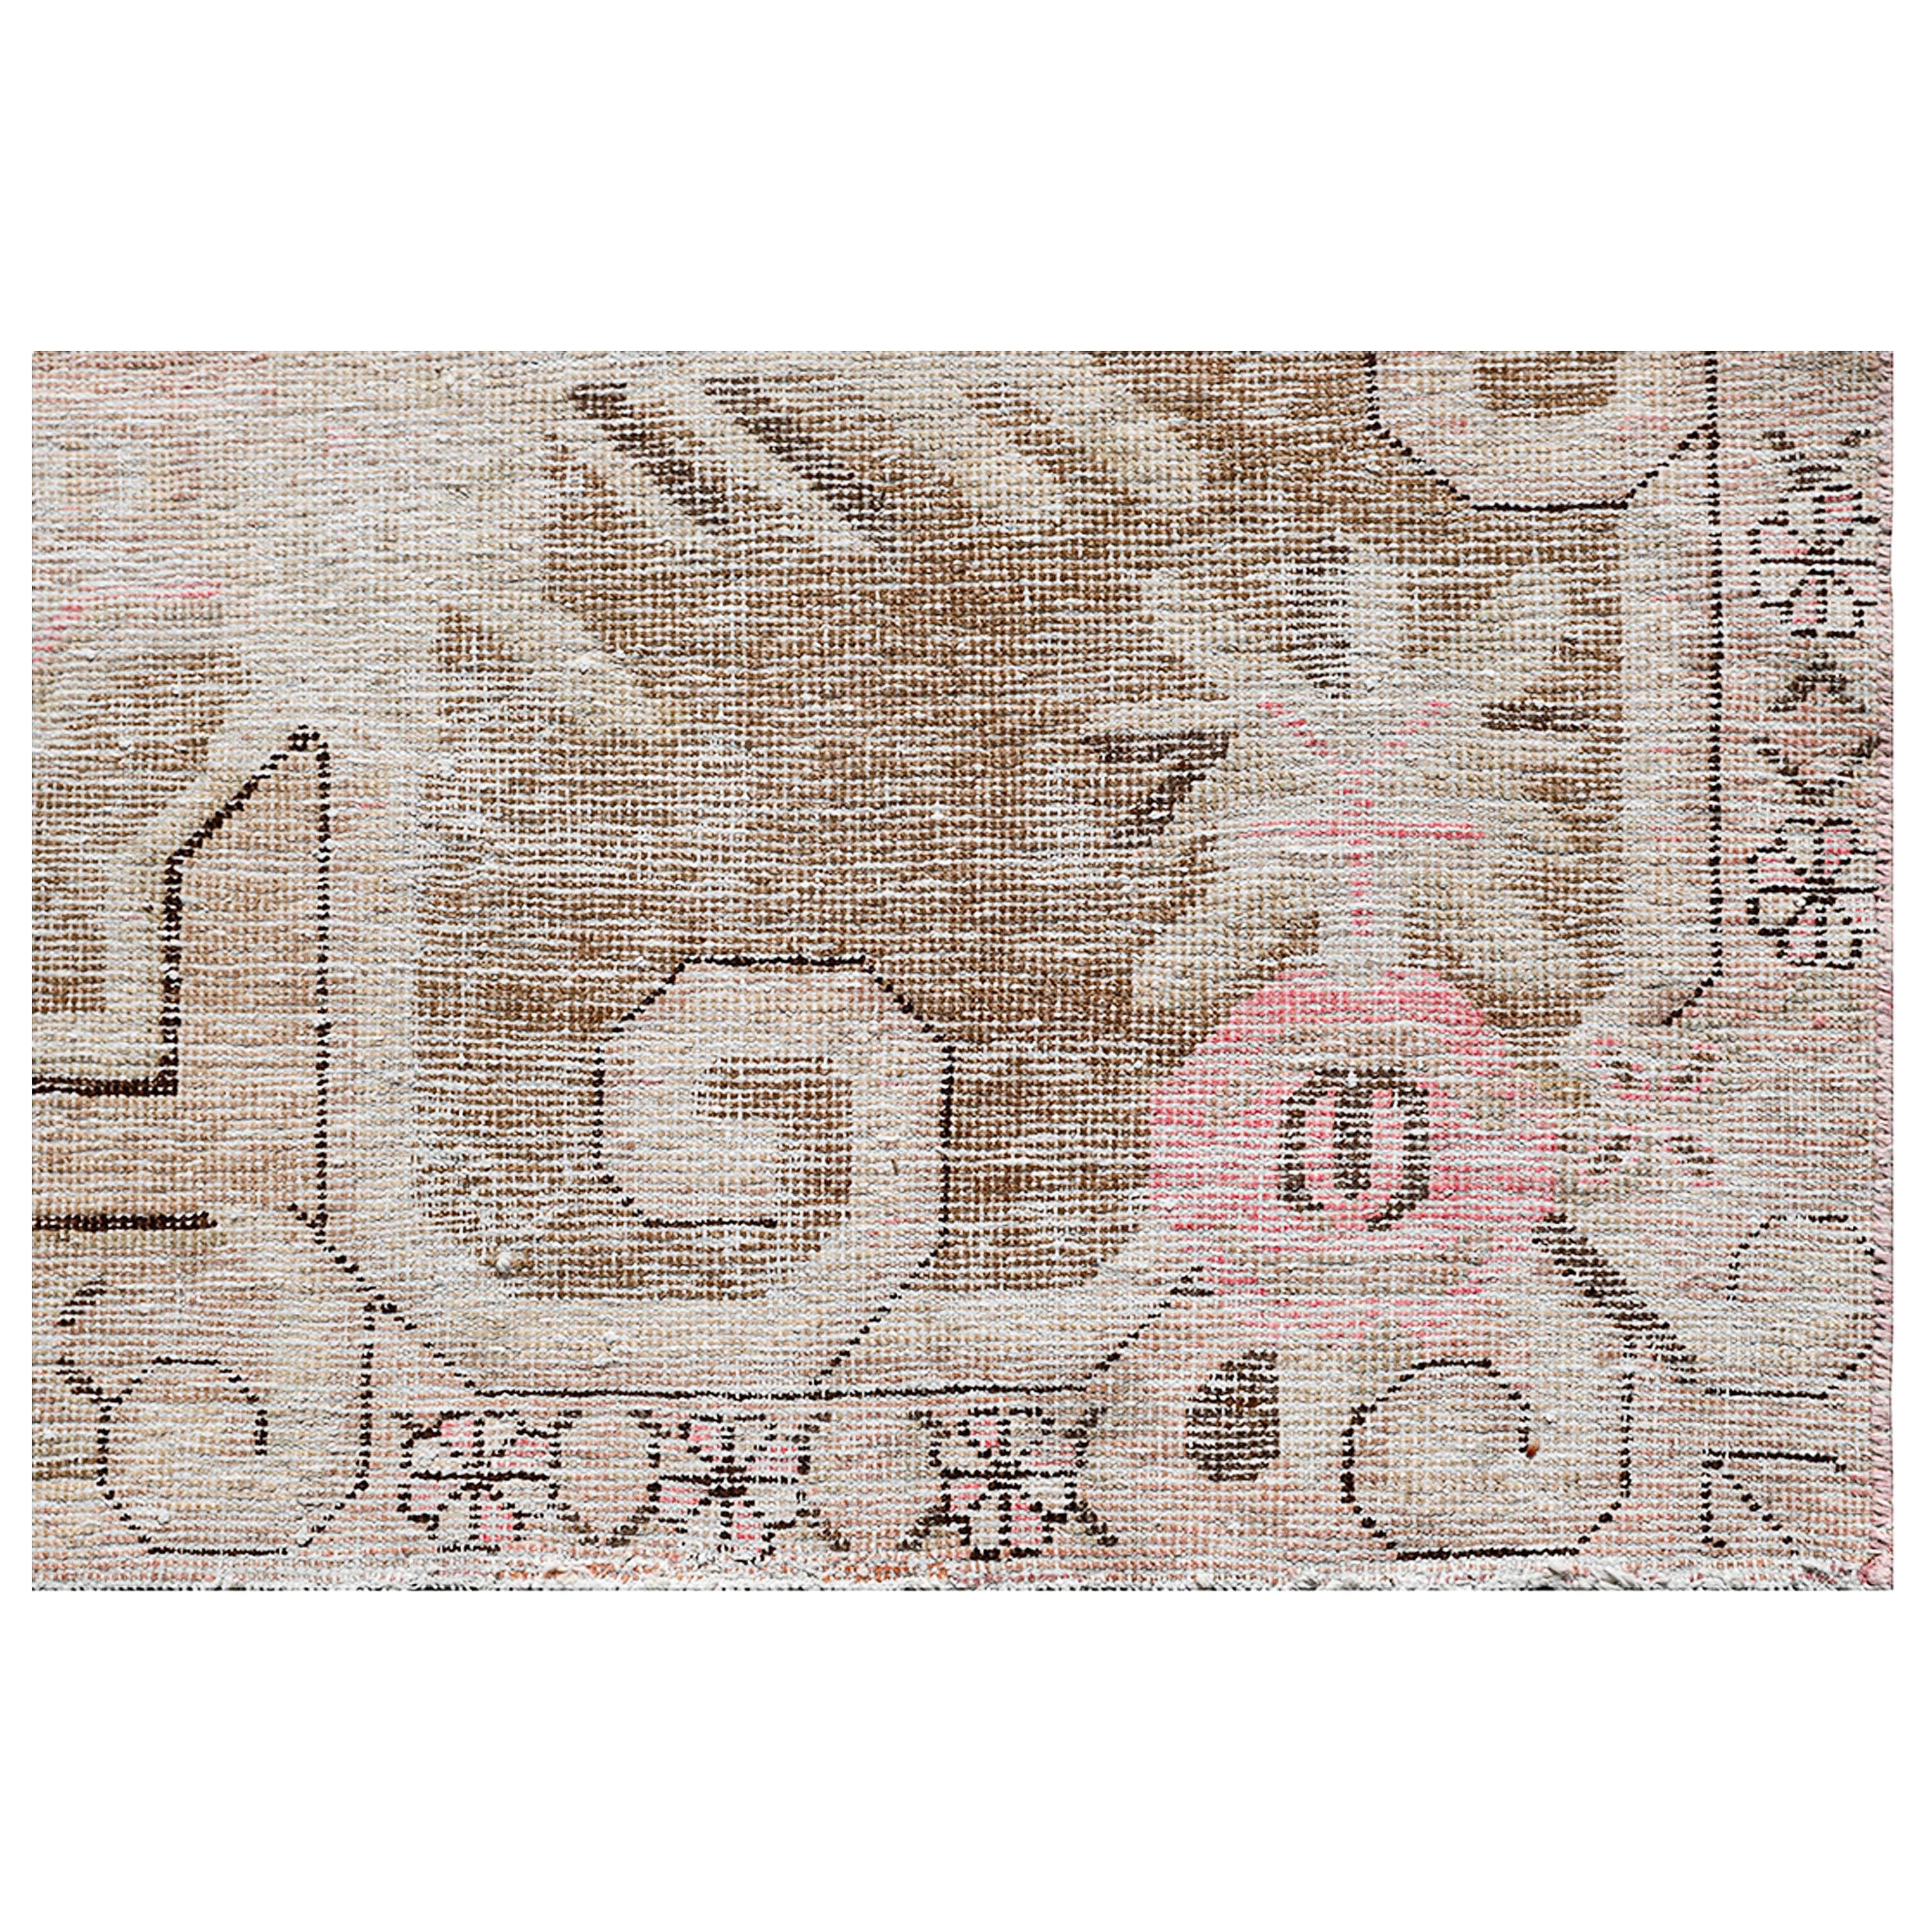 Uzbek abc carpet Beige and Pink Vintage Wool Cotton Blend Rug - 5'5